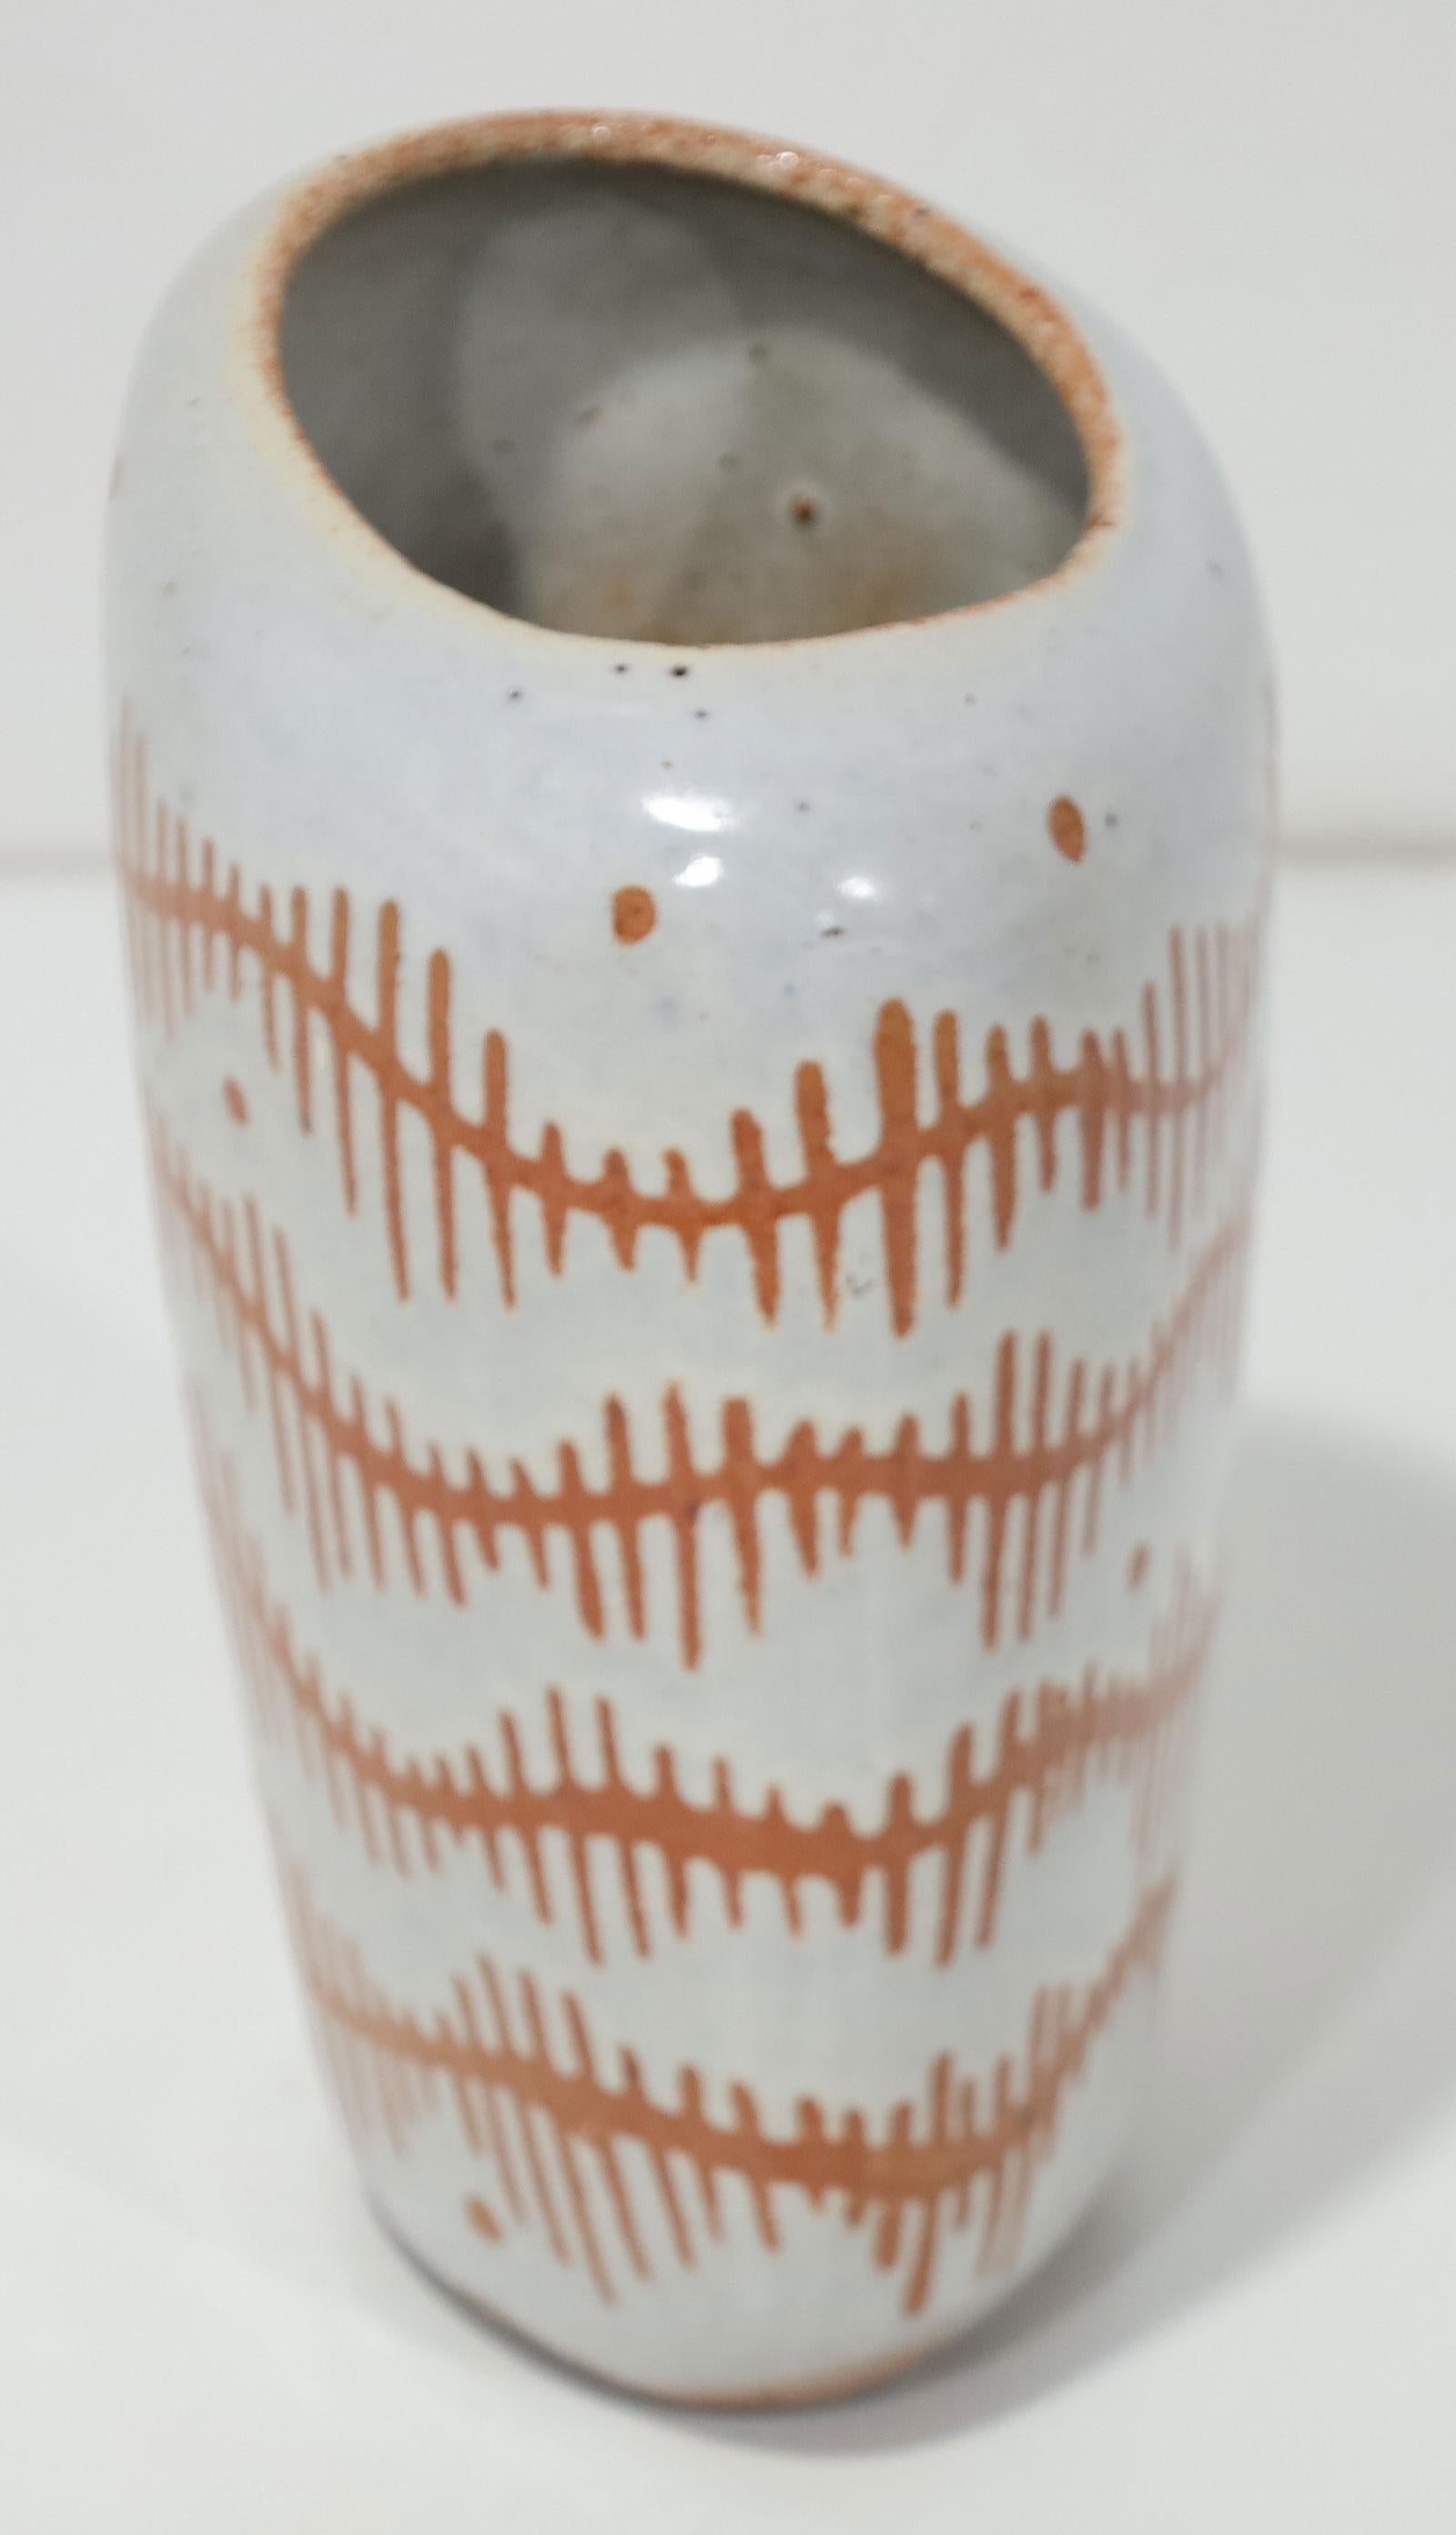 Magnifique motif sur un vase en grès de taille moyenne. Forme asymétrique avec ouverture asymétrique.  Vers les années 60. 